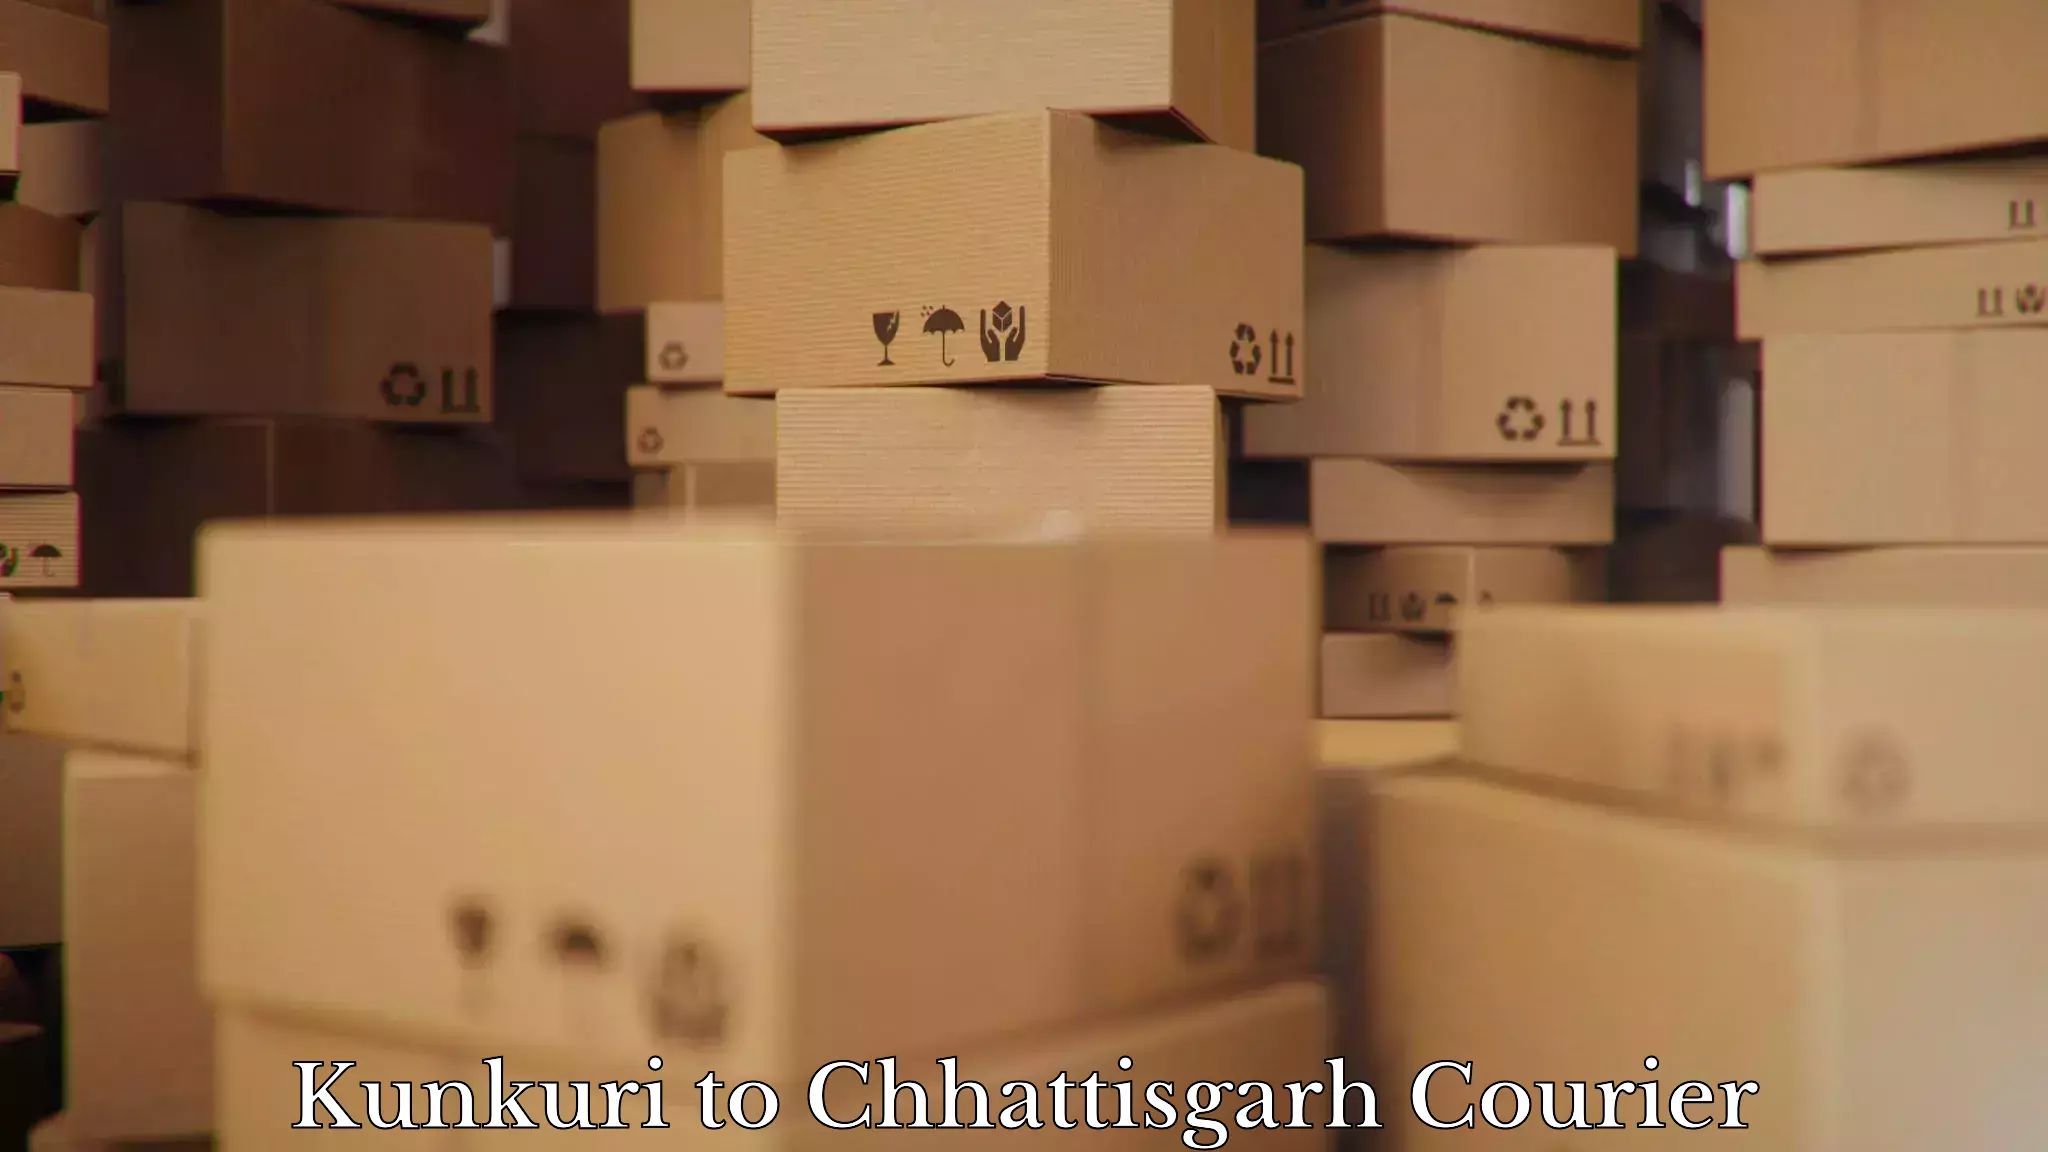 Furniture moving experts Kunkuri to Pakhanjur